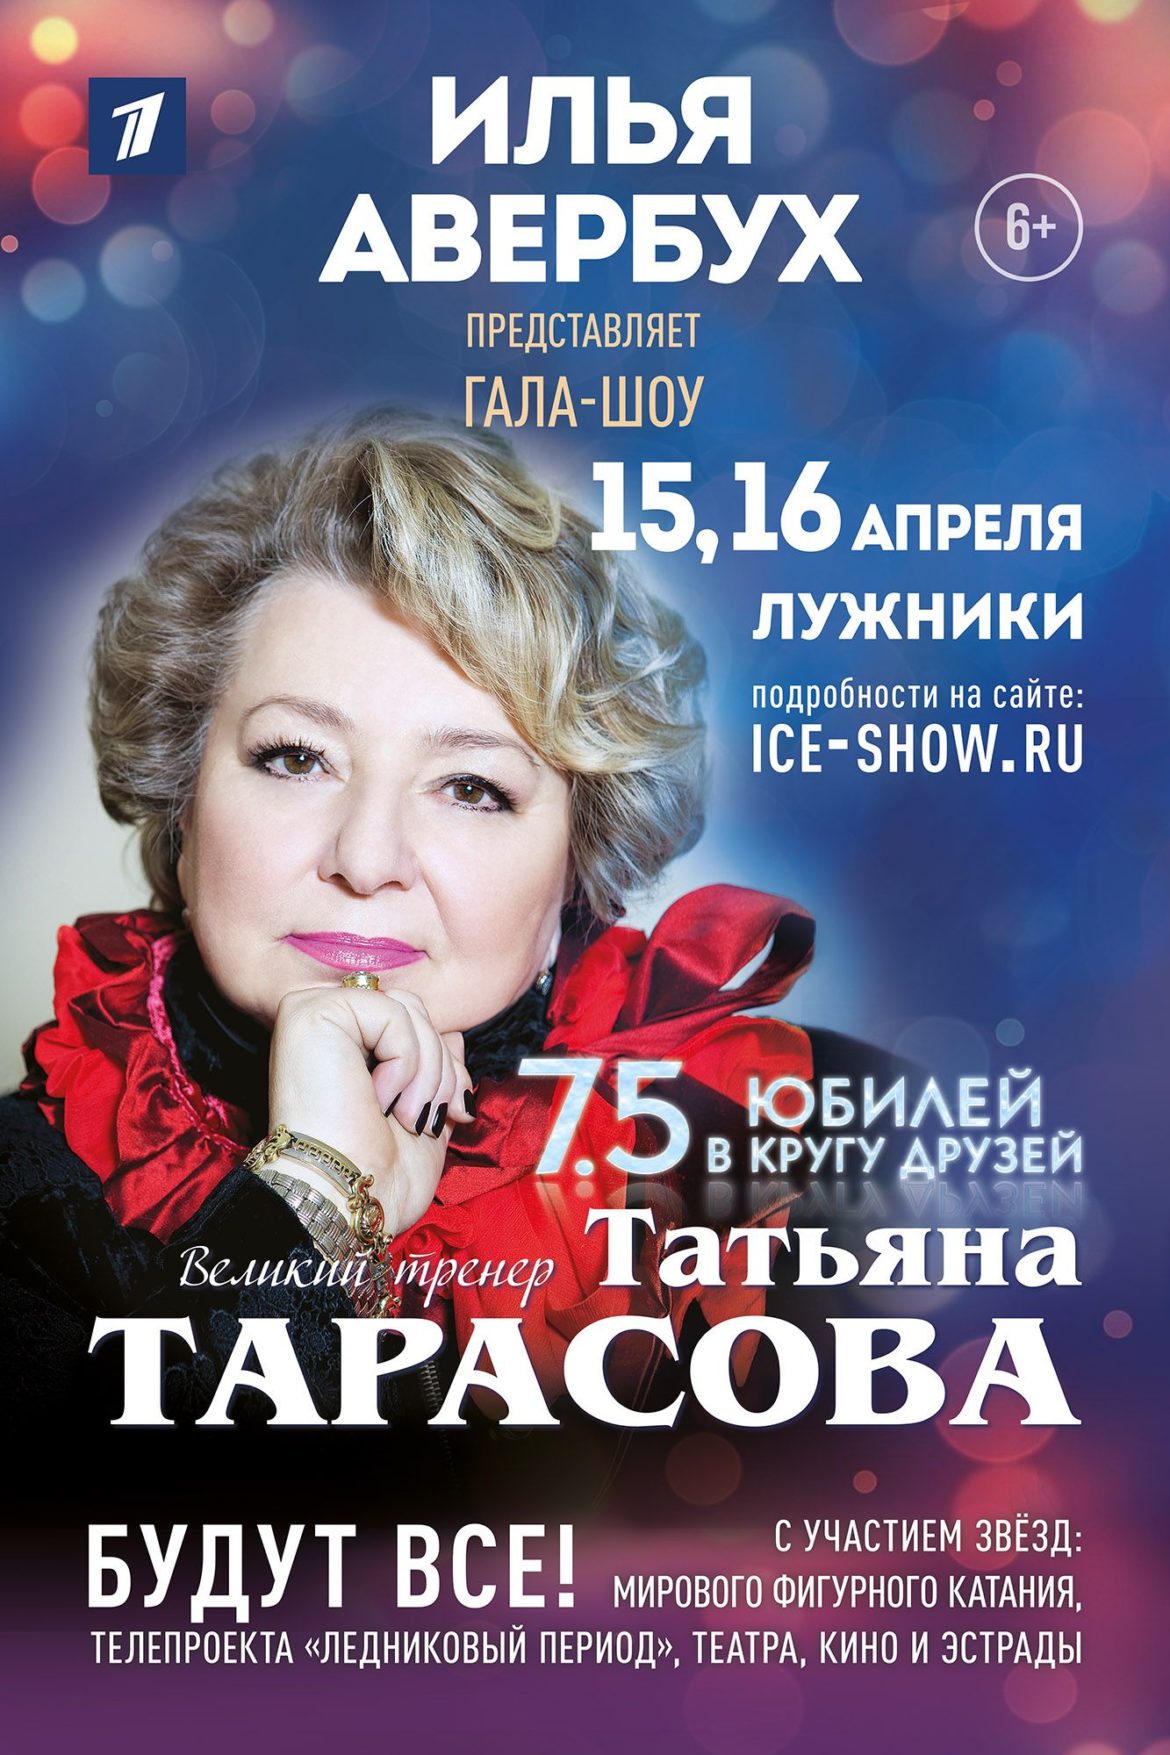 Юбилейное Гала — шоу к юбилею Татьяны Тарасовой состоится в Лужниках